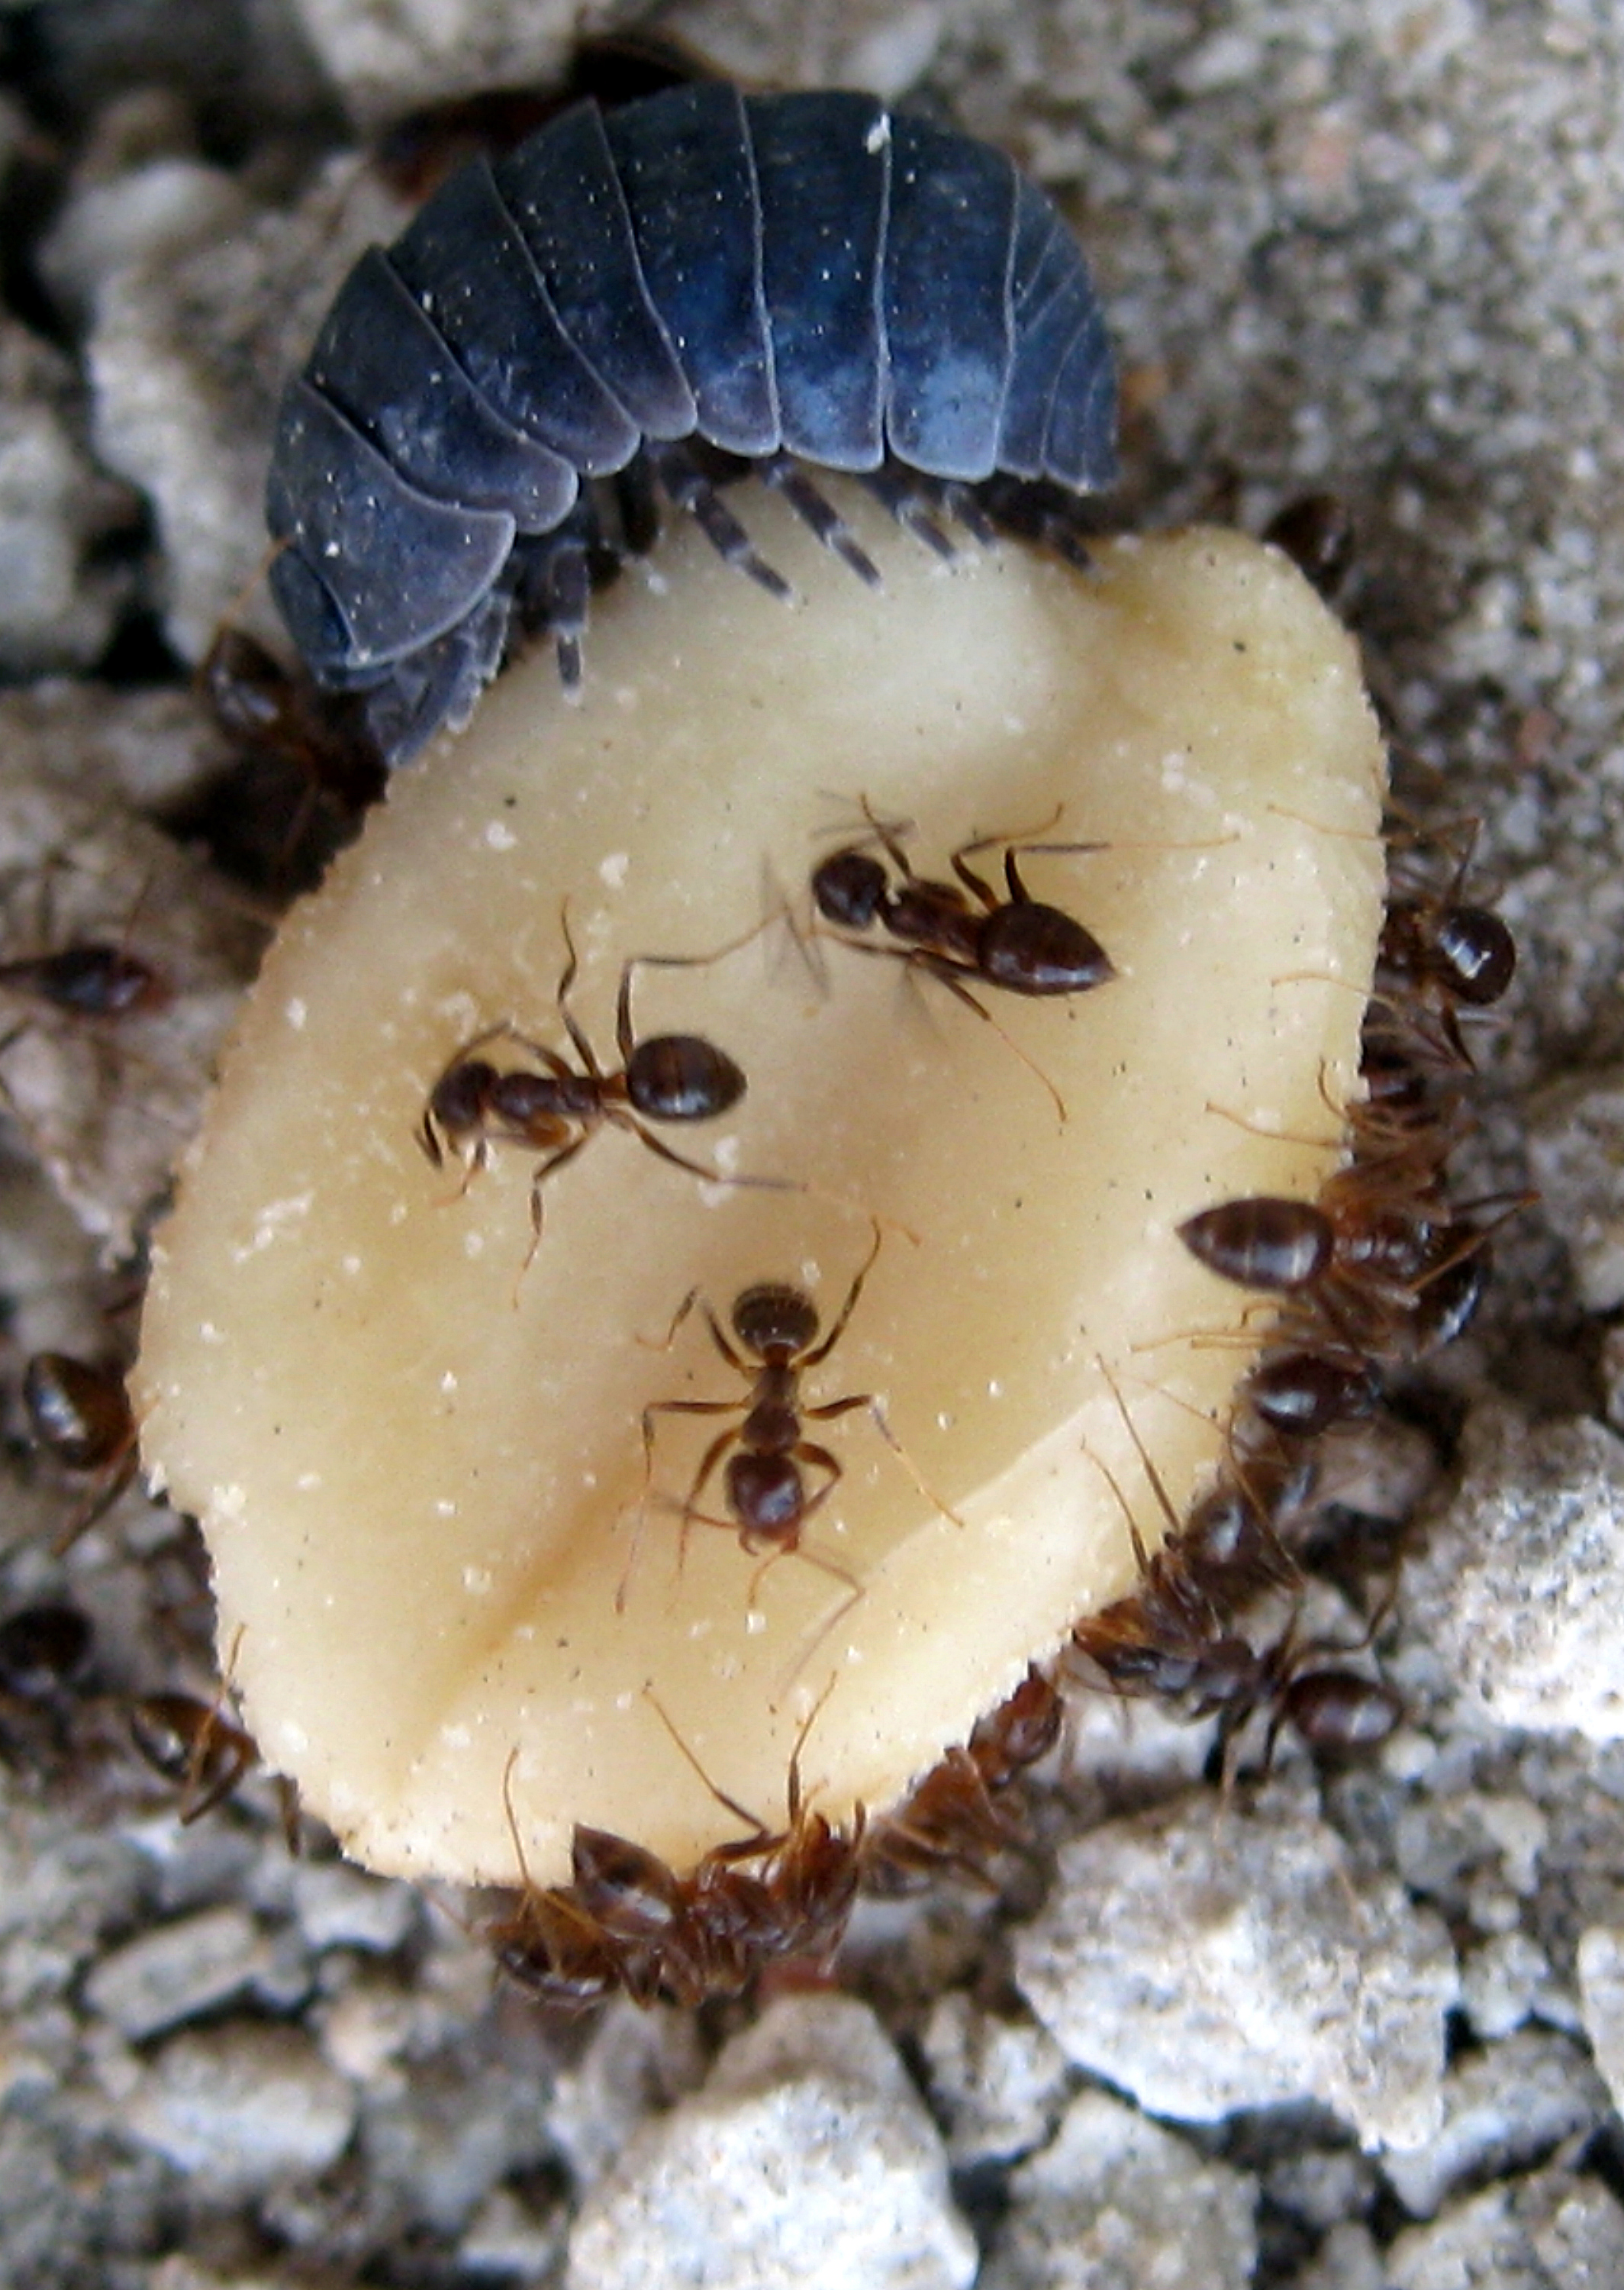 http://ourbaytown.com/baytownbert/images6/Ants-Pillbug2.jpg